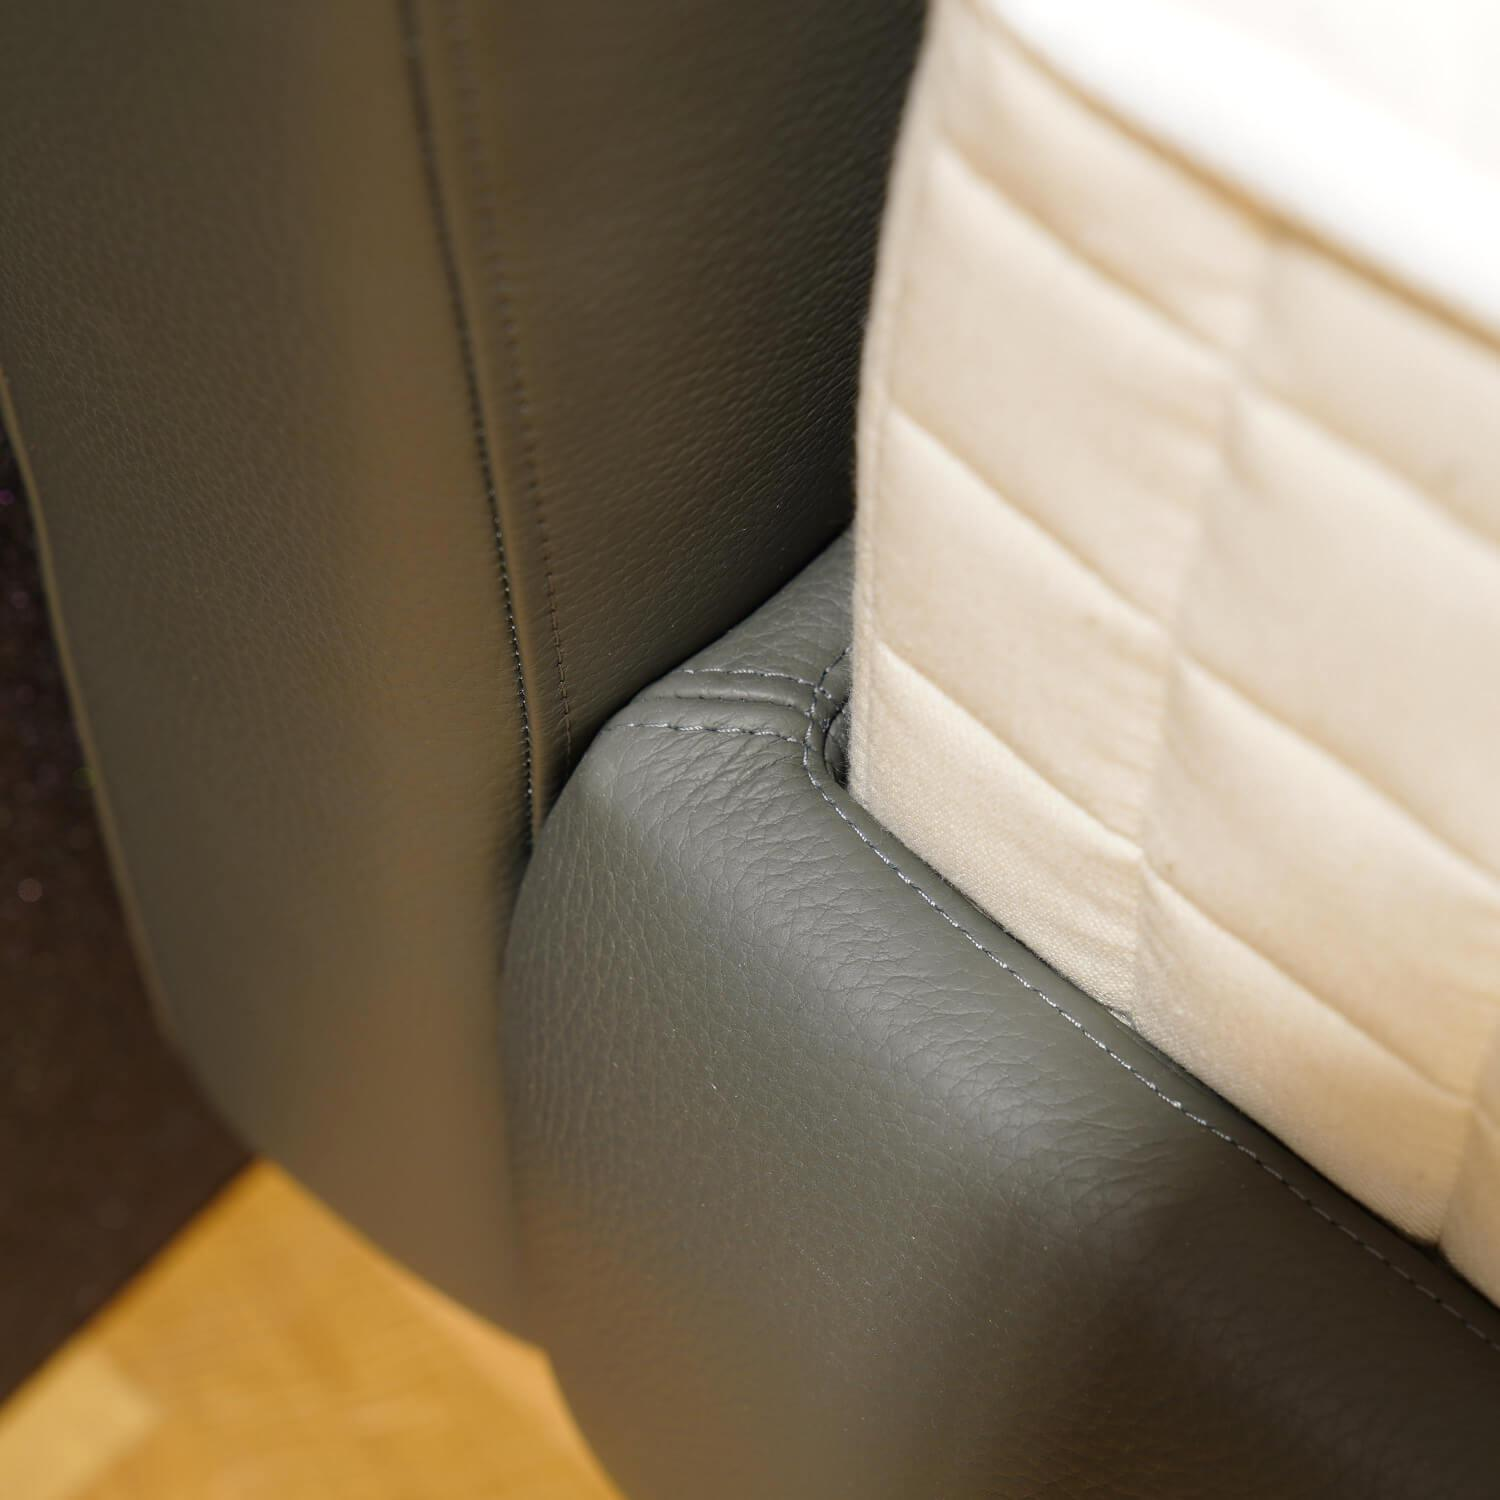 Bett Plaisir Bezug Bezug Leder Comfort Graphite Metallbügel Schwarz Matt Inklusive 2 Einlegesysteme Und 2 Matratzen